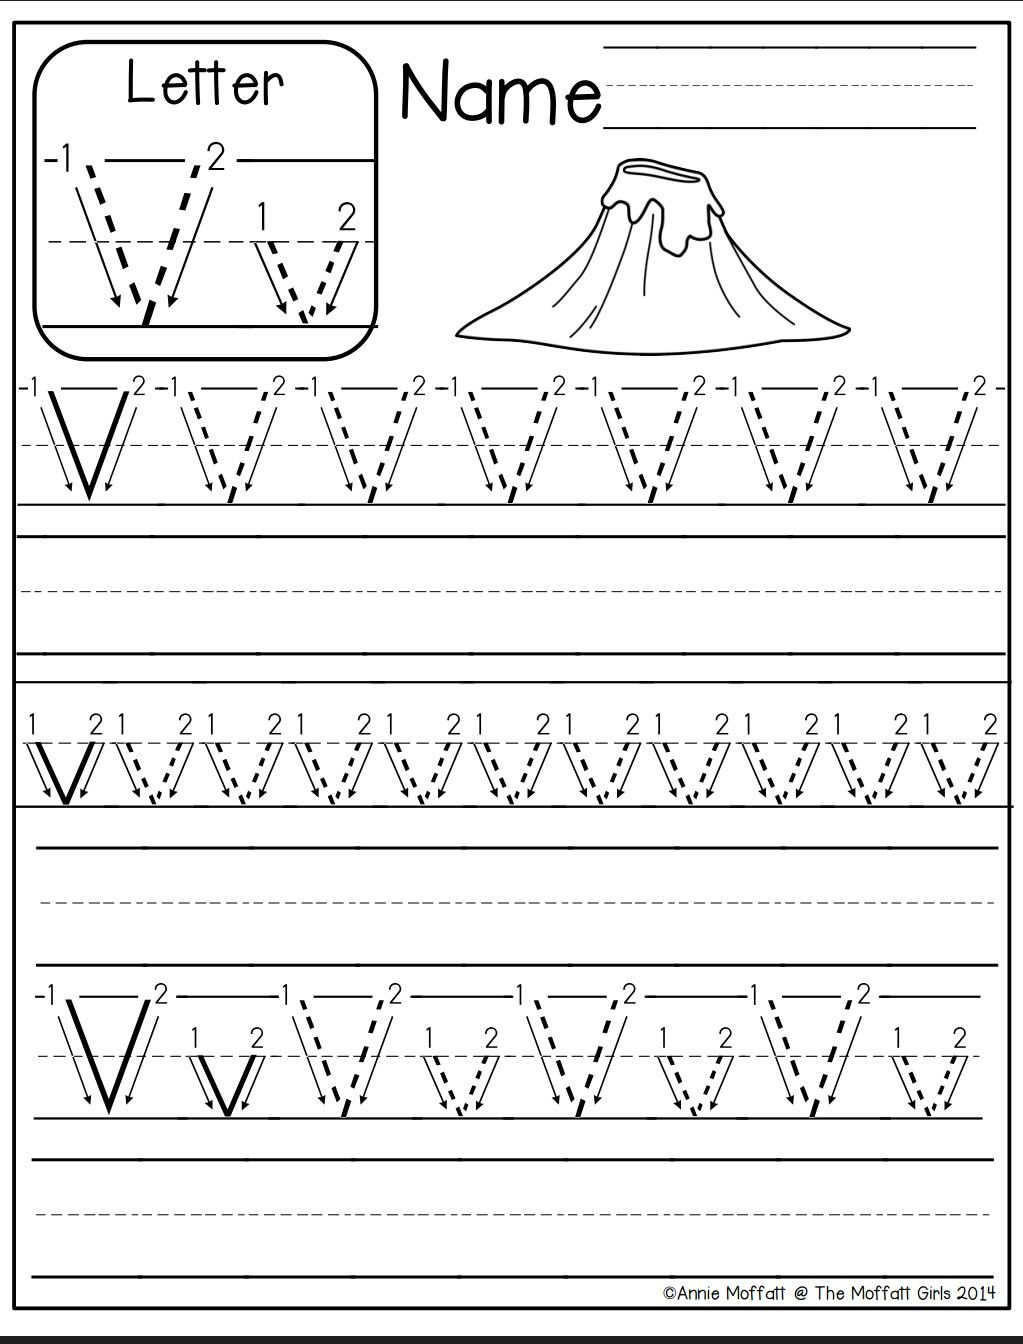 Letter V Tracing Worksheets For Preschool